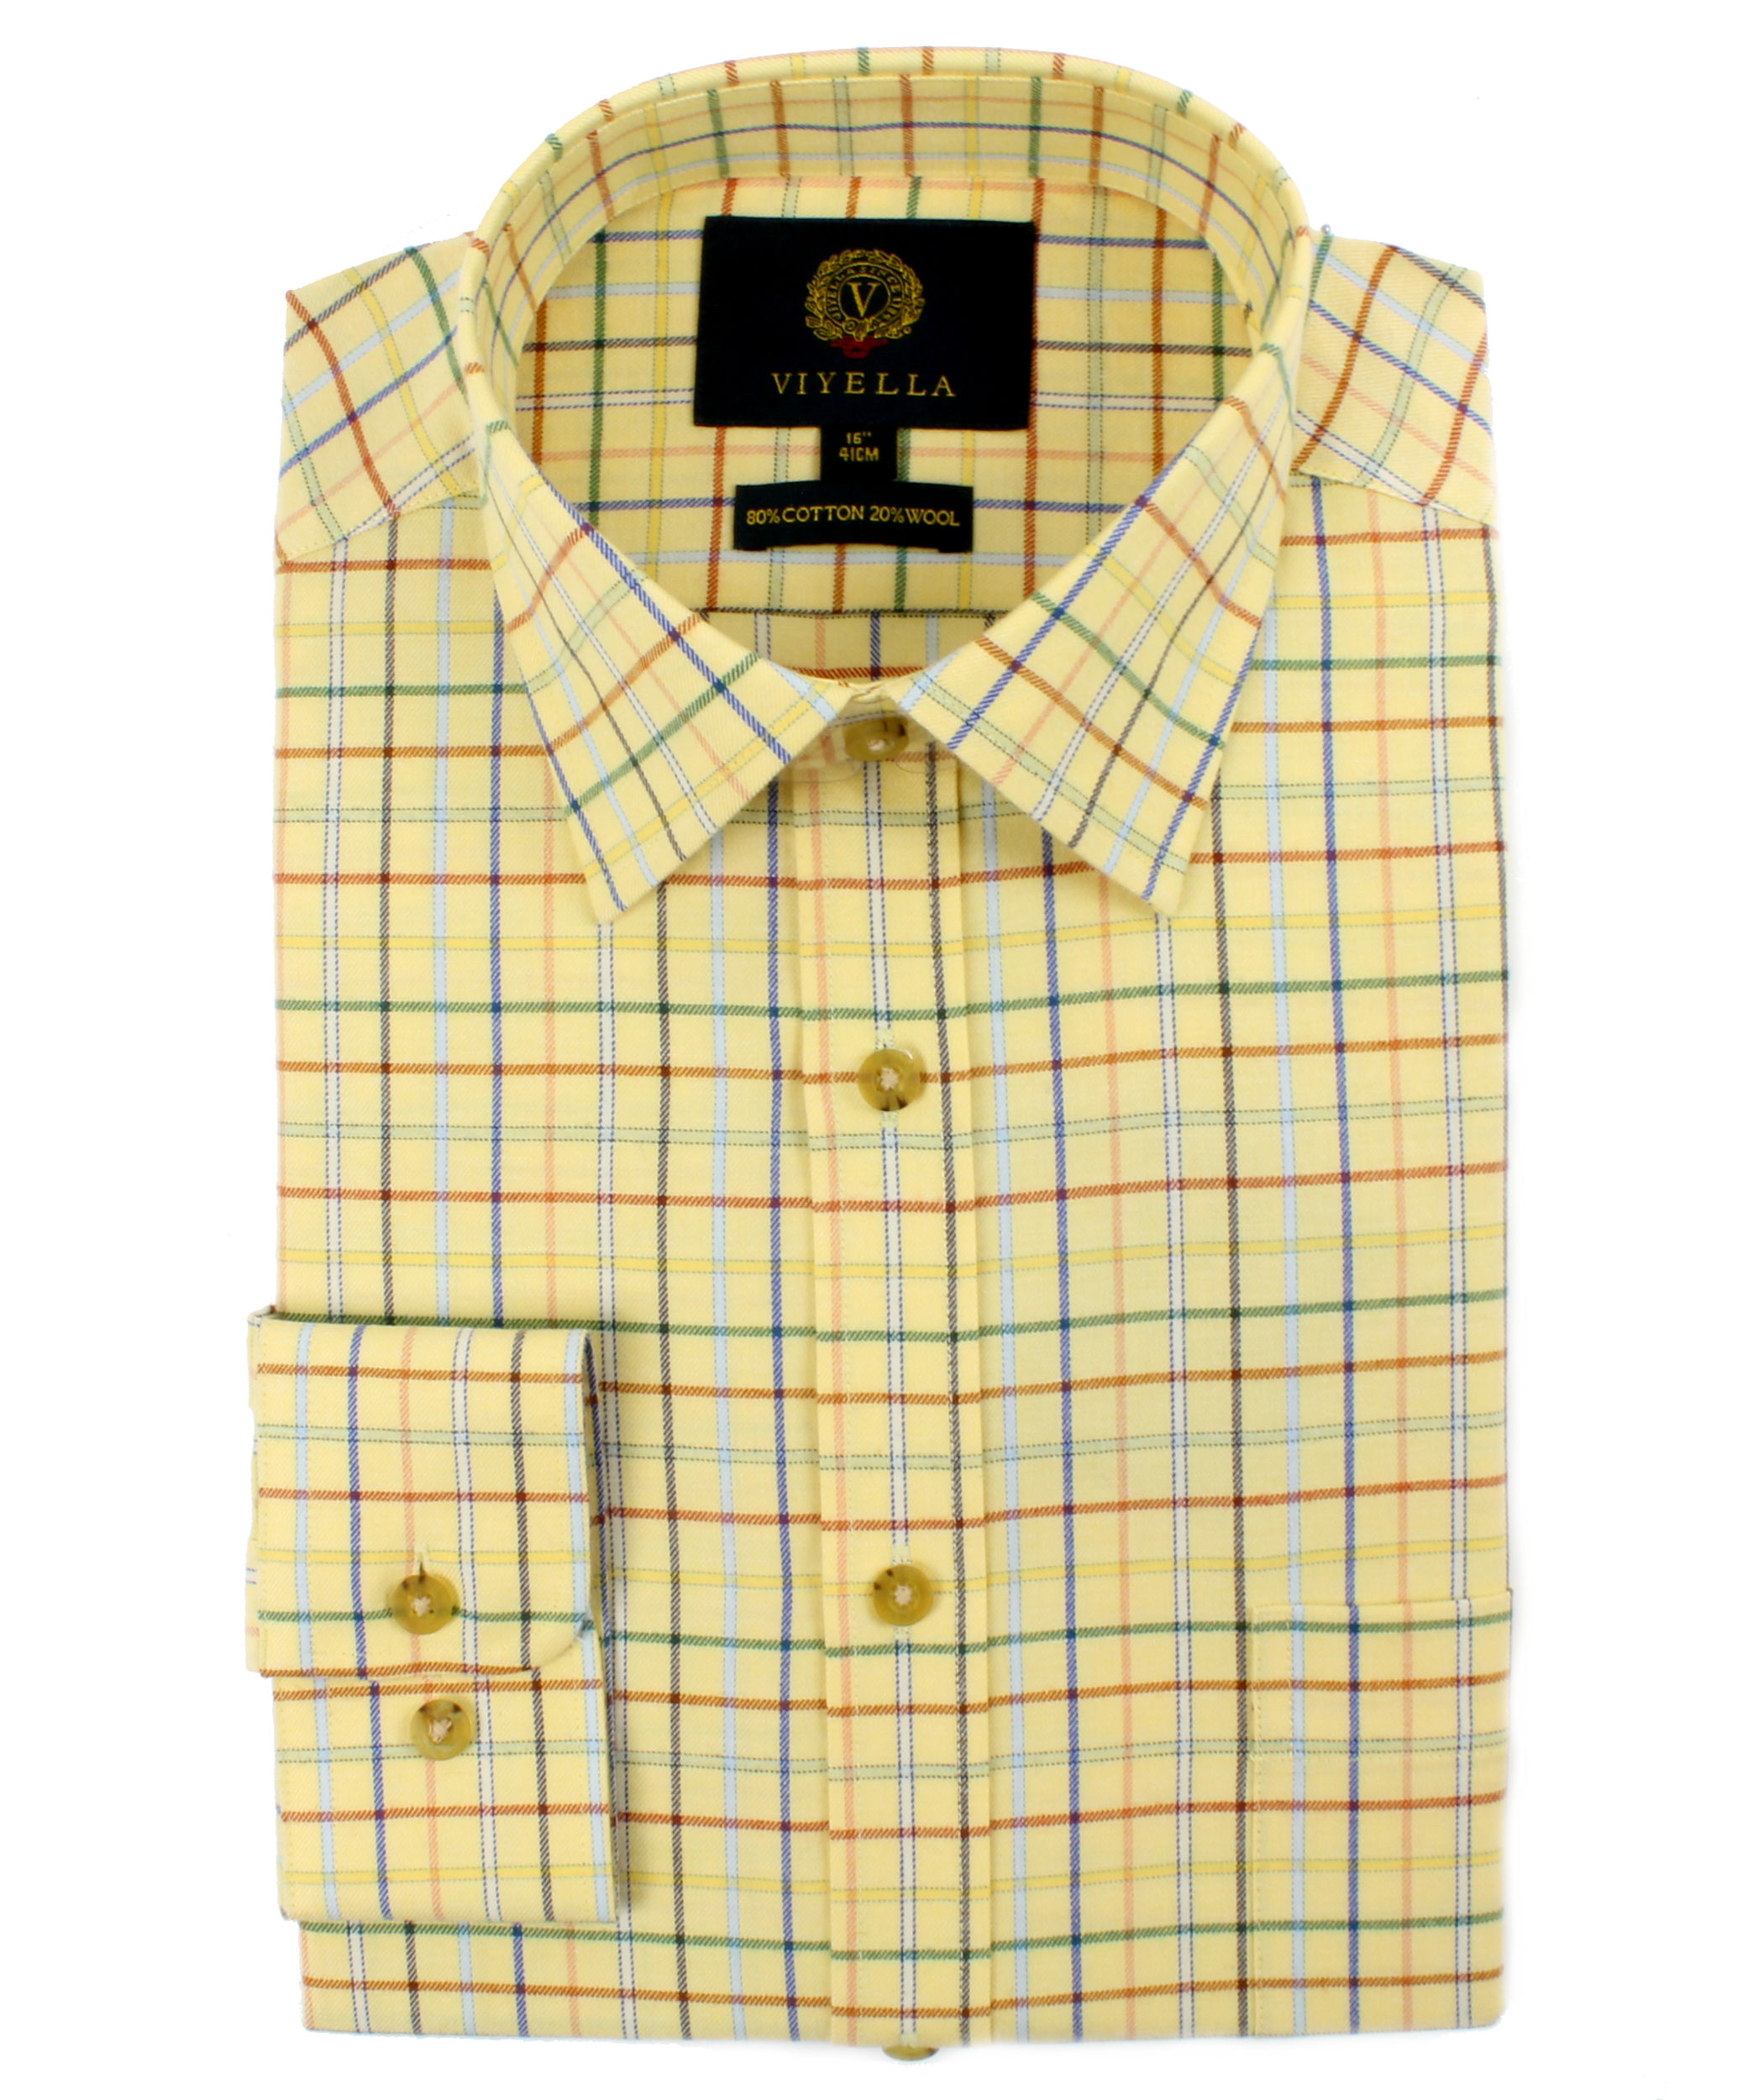 Viyella 80/20 Yellow Tattersall Check Classic Fit Shirt - Viyella